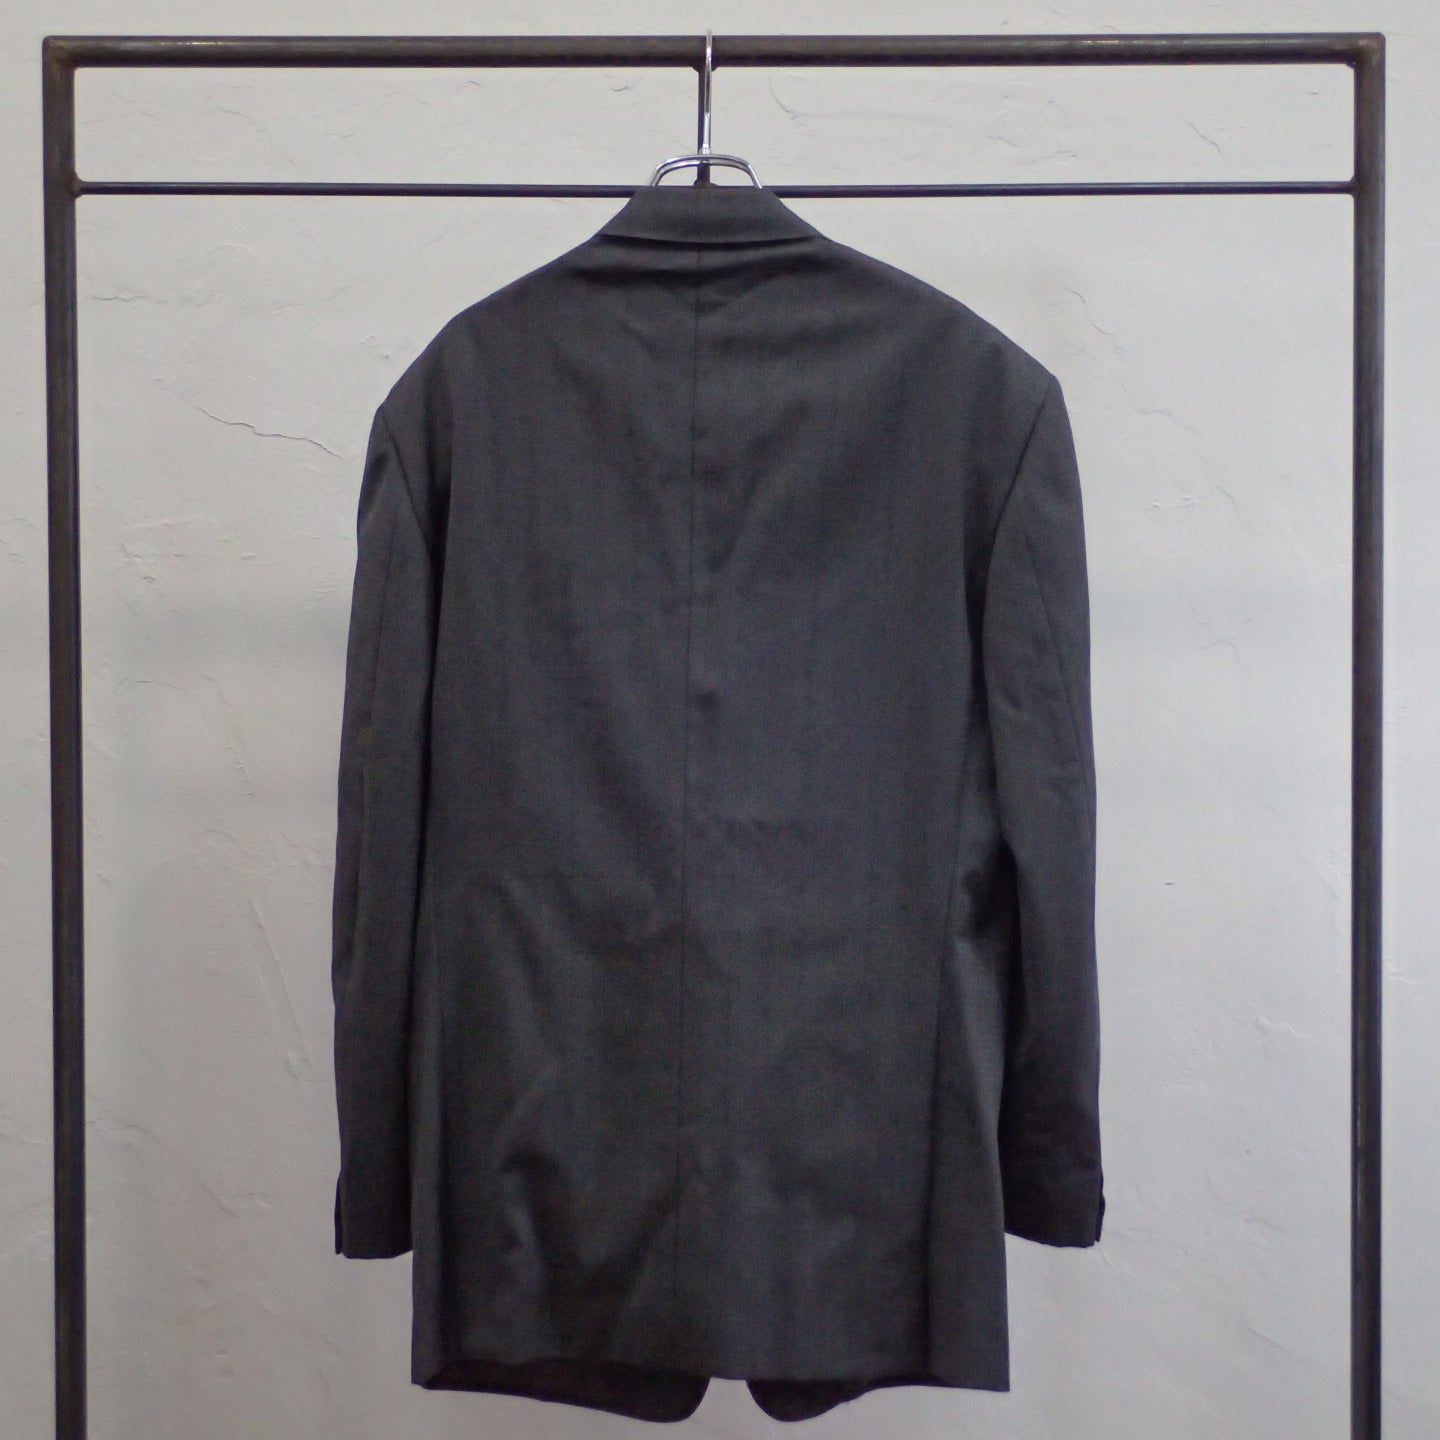 90s GIANNI VERSACE Herringbone Tailored Jacket